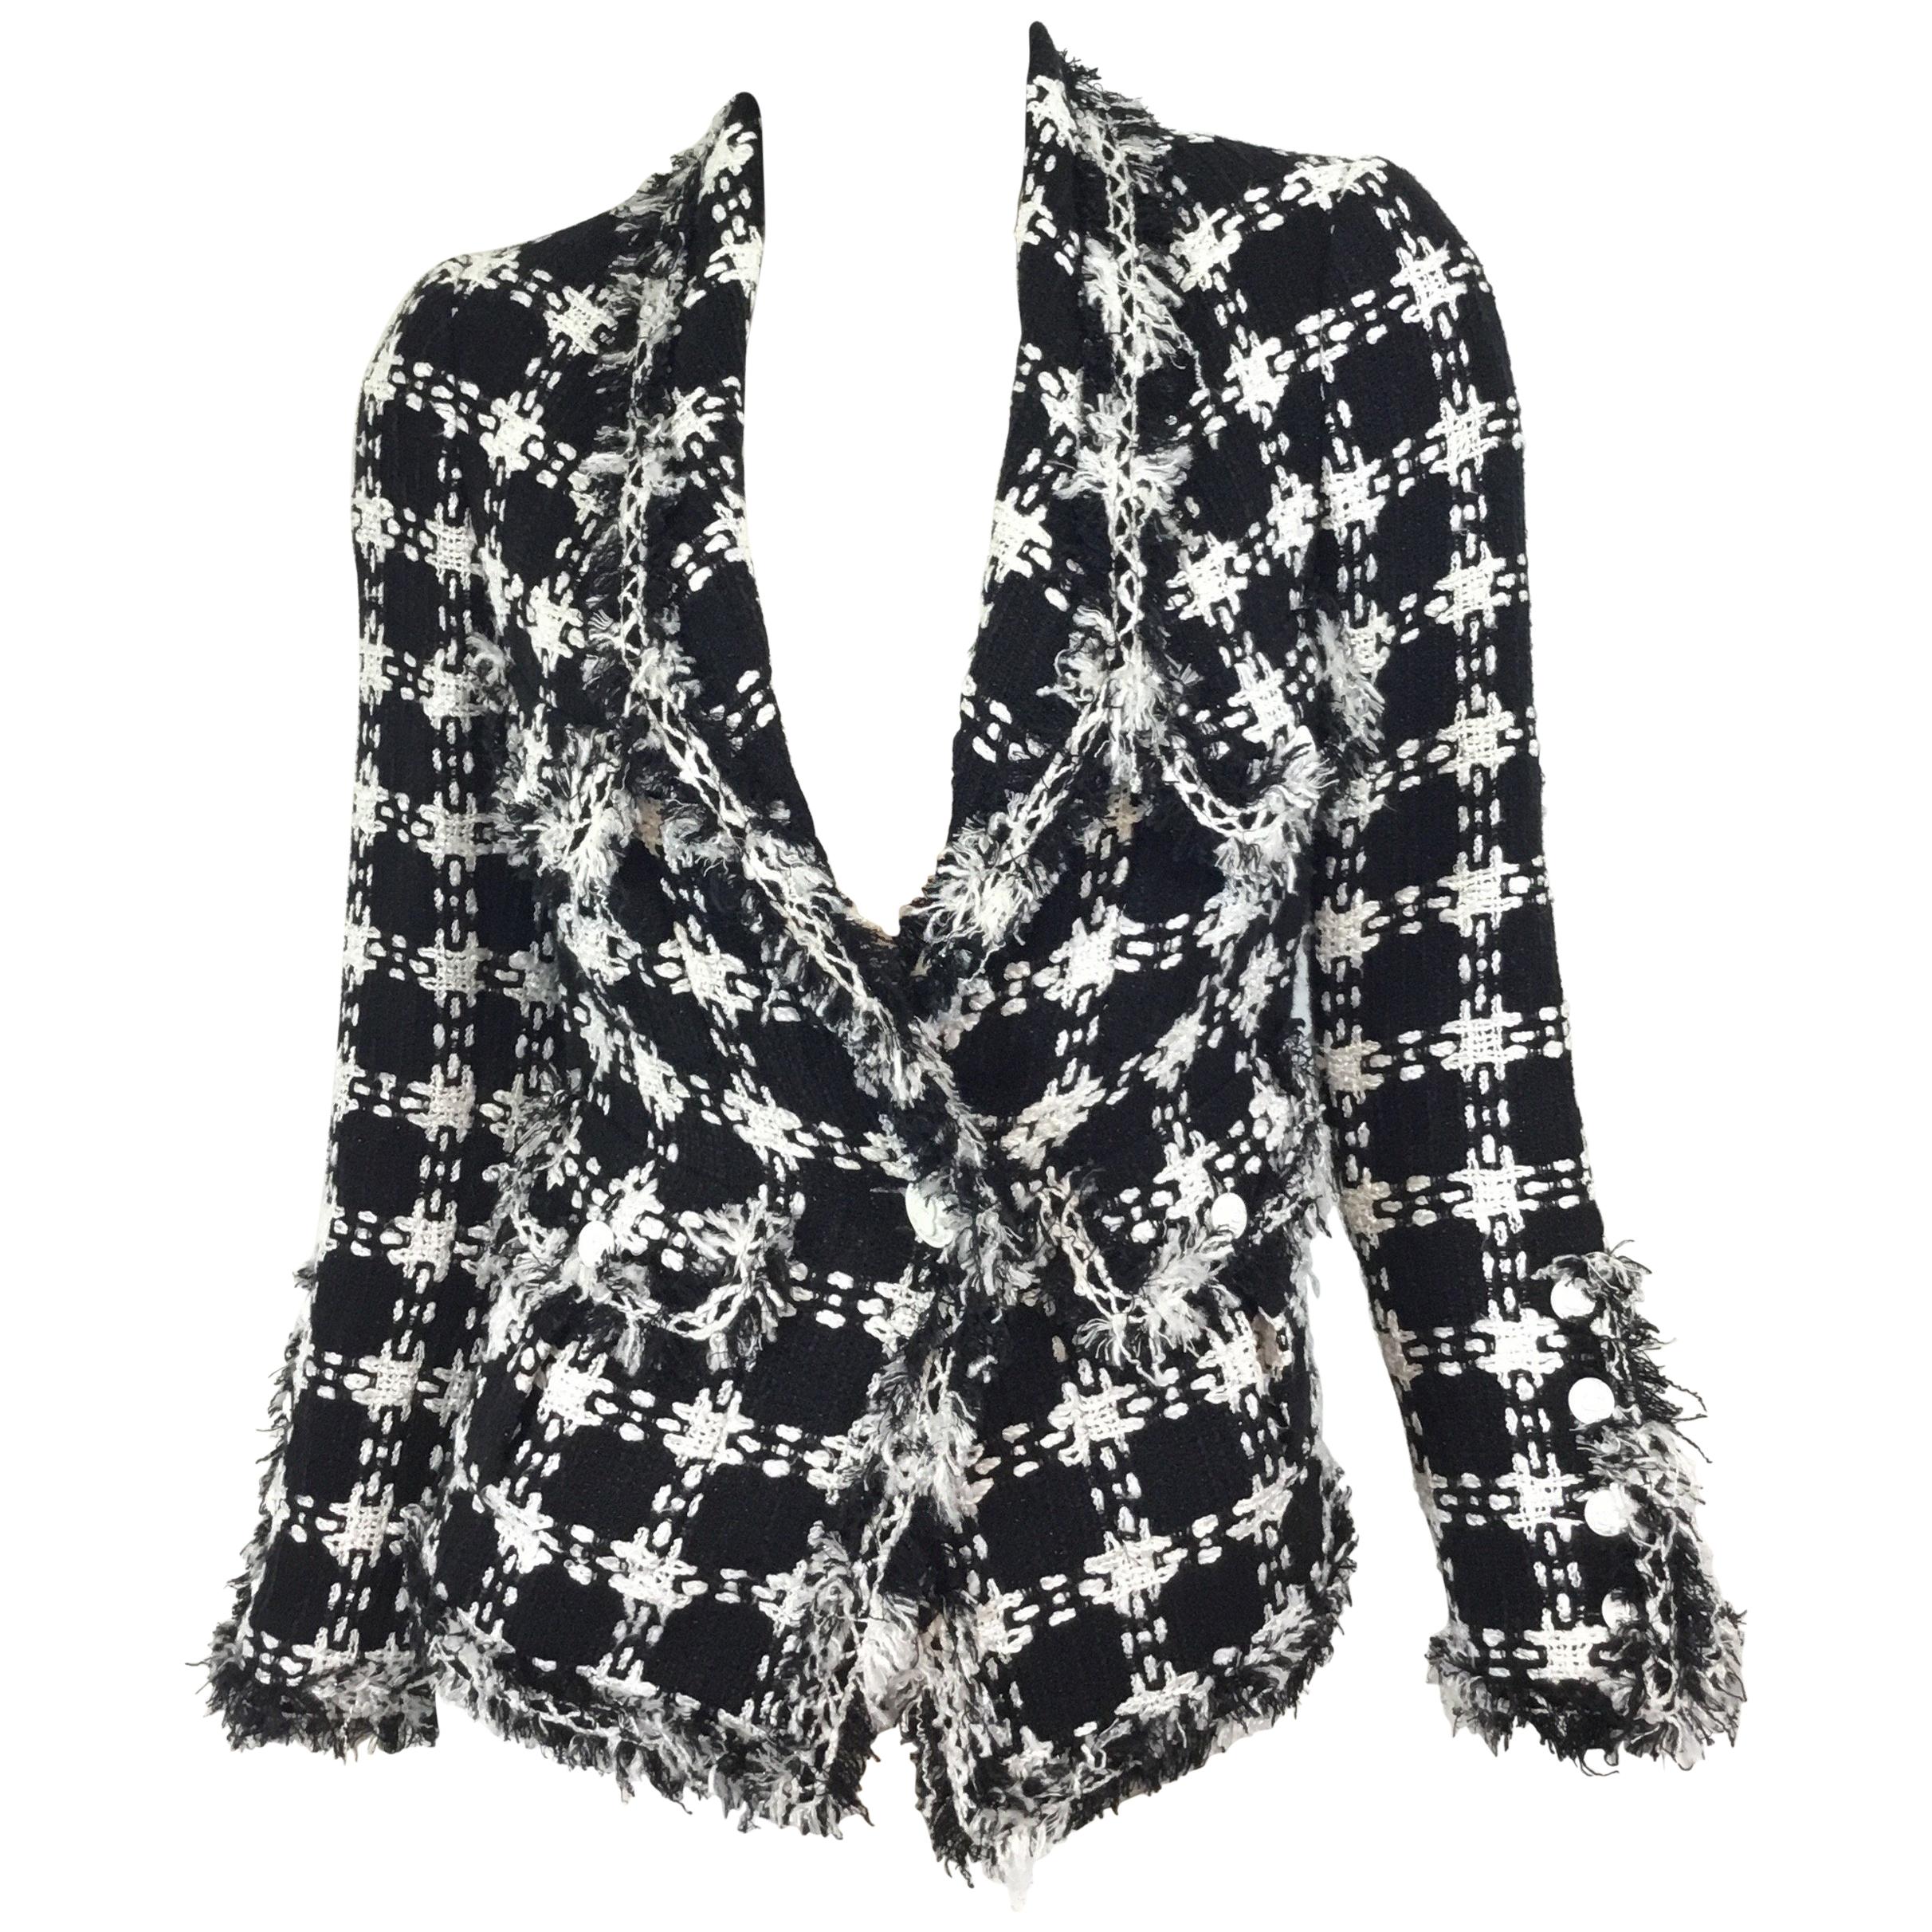 Chanel 07 P Black & White Tweed Jacket with Fringe